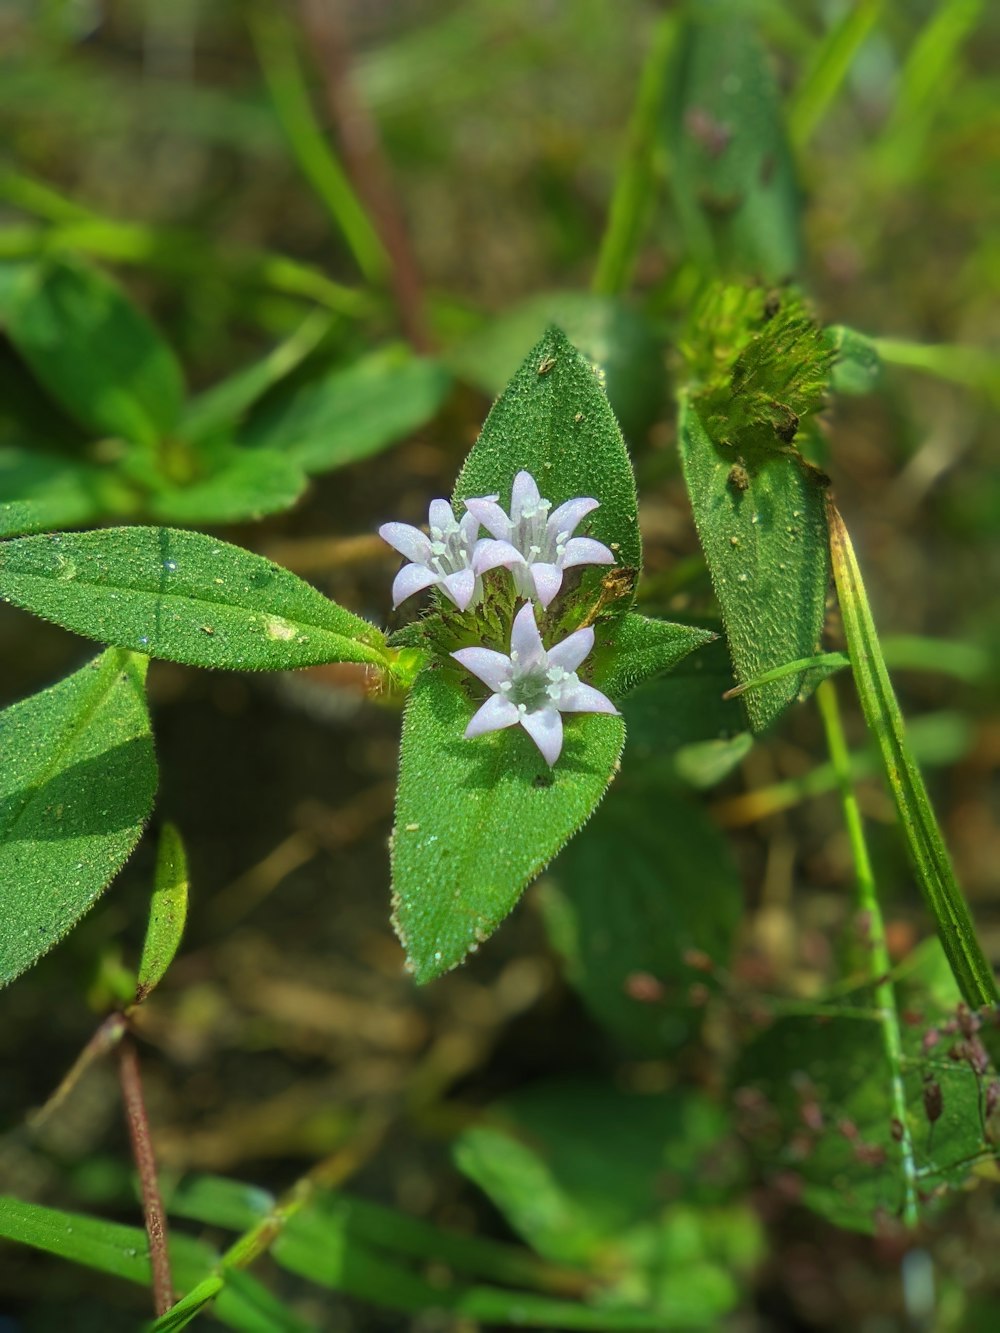 eine kleine weiße Blume, die auf einem grünen Blatt sitzt